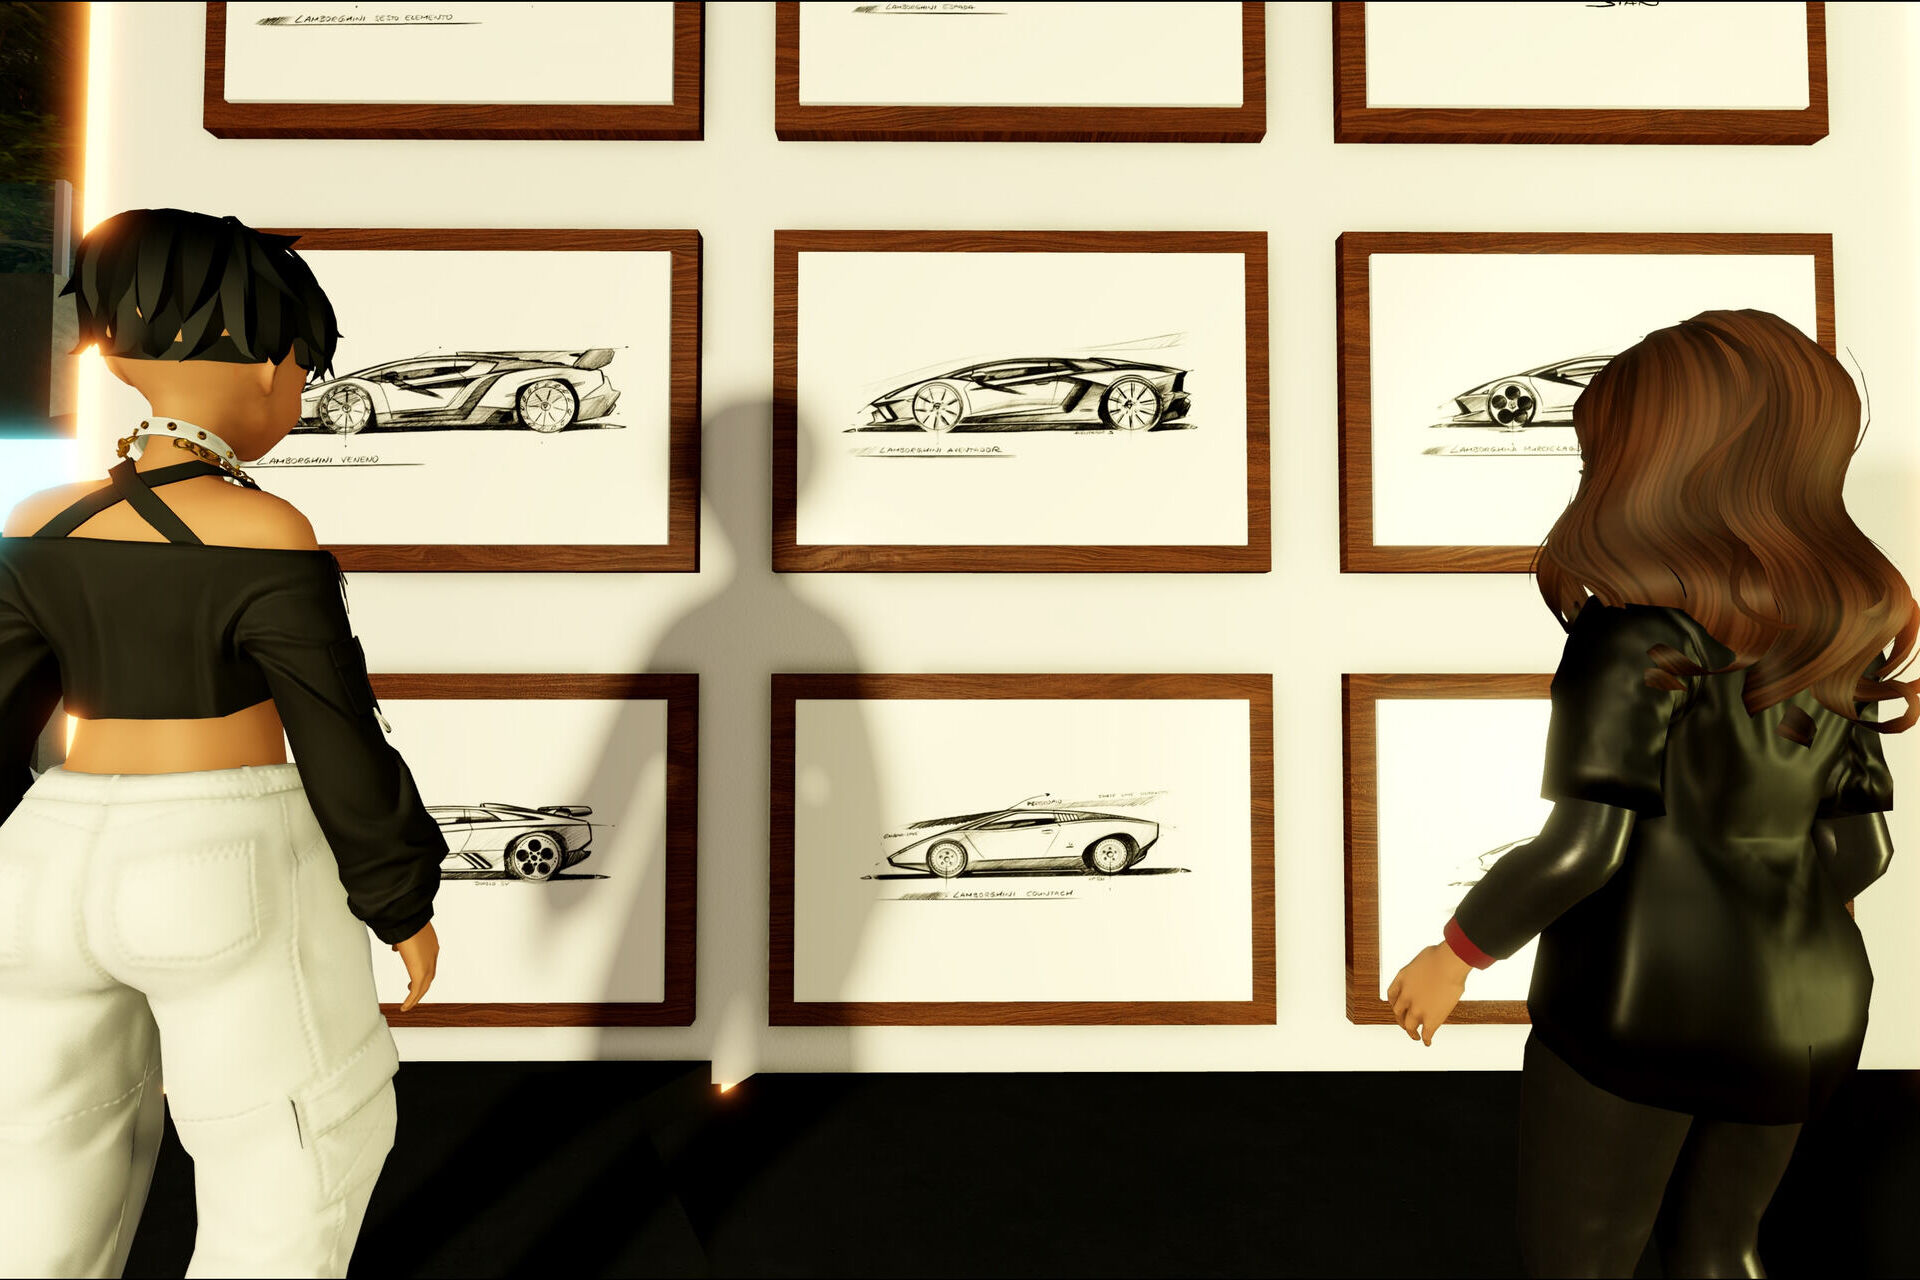 Ланзадор: Електричниот суперавтомобил на Automobili Lamborghini е на Roblox, 3D извонредна платформа